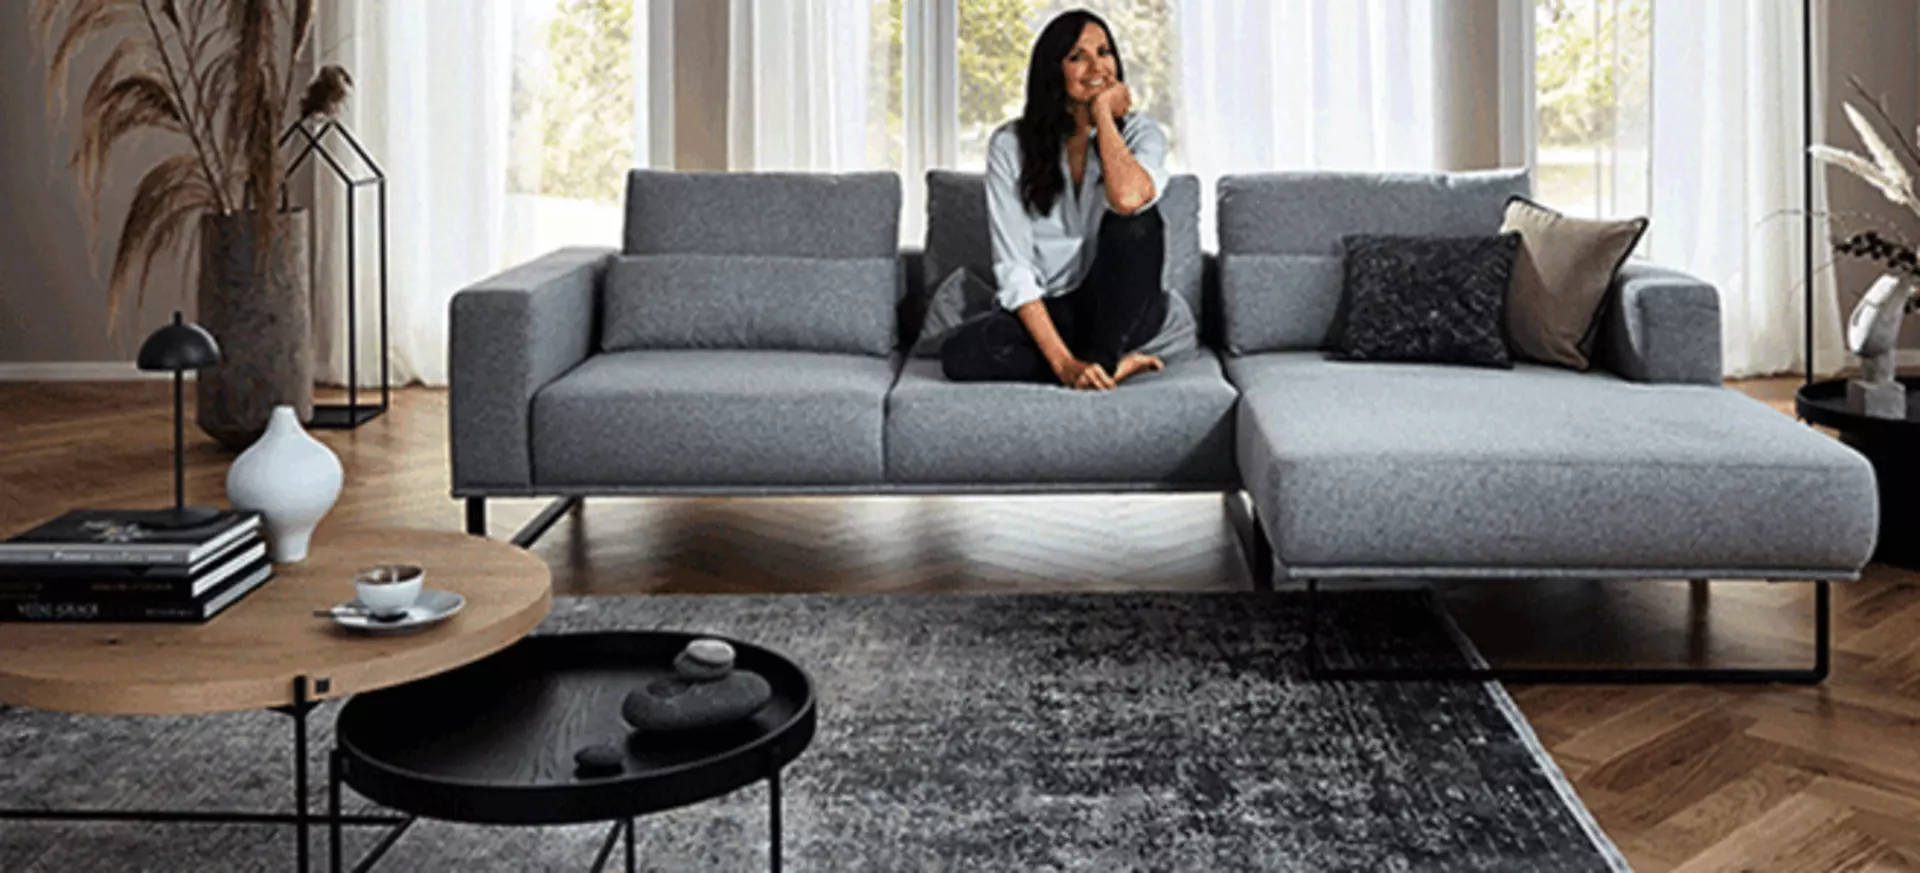 Die Schauspielerin Bettina Zimmermann auf einer grauen Couch in einem Wohnzimmer mit grauen und weißen Dekorationen.